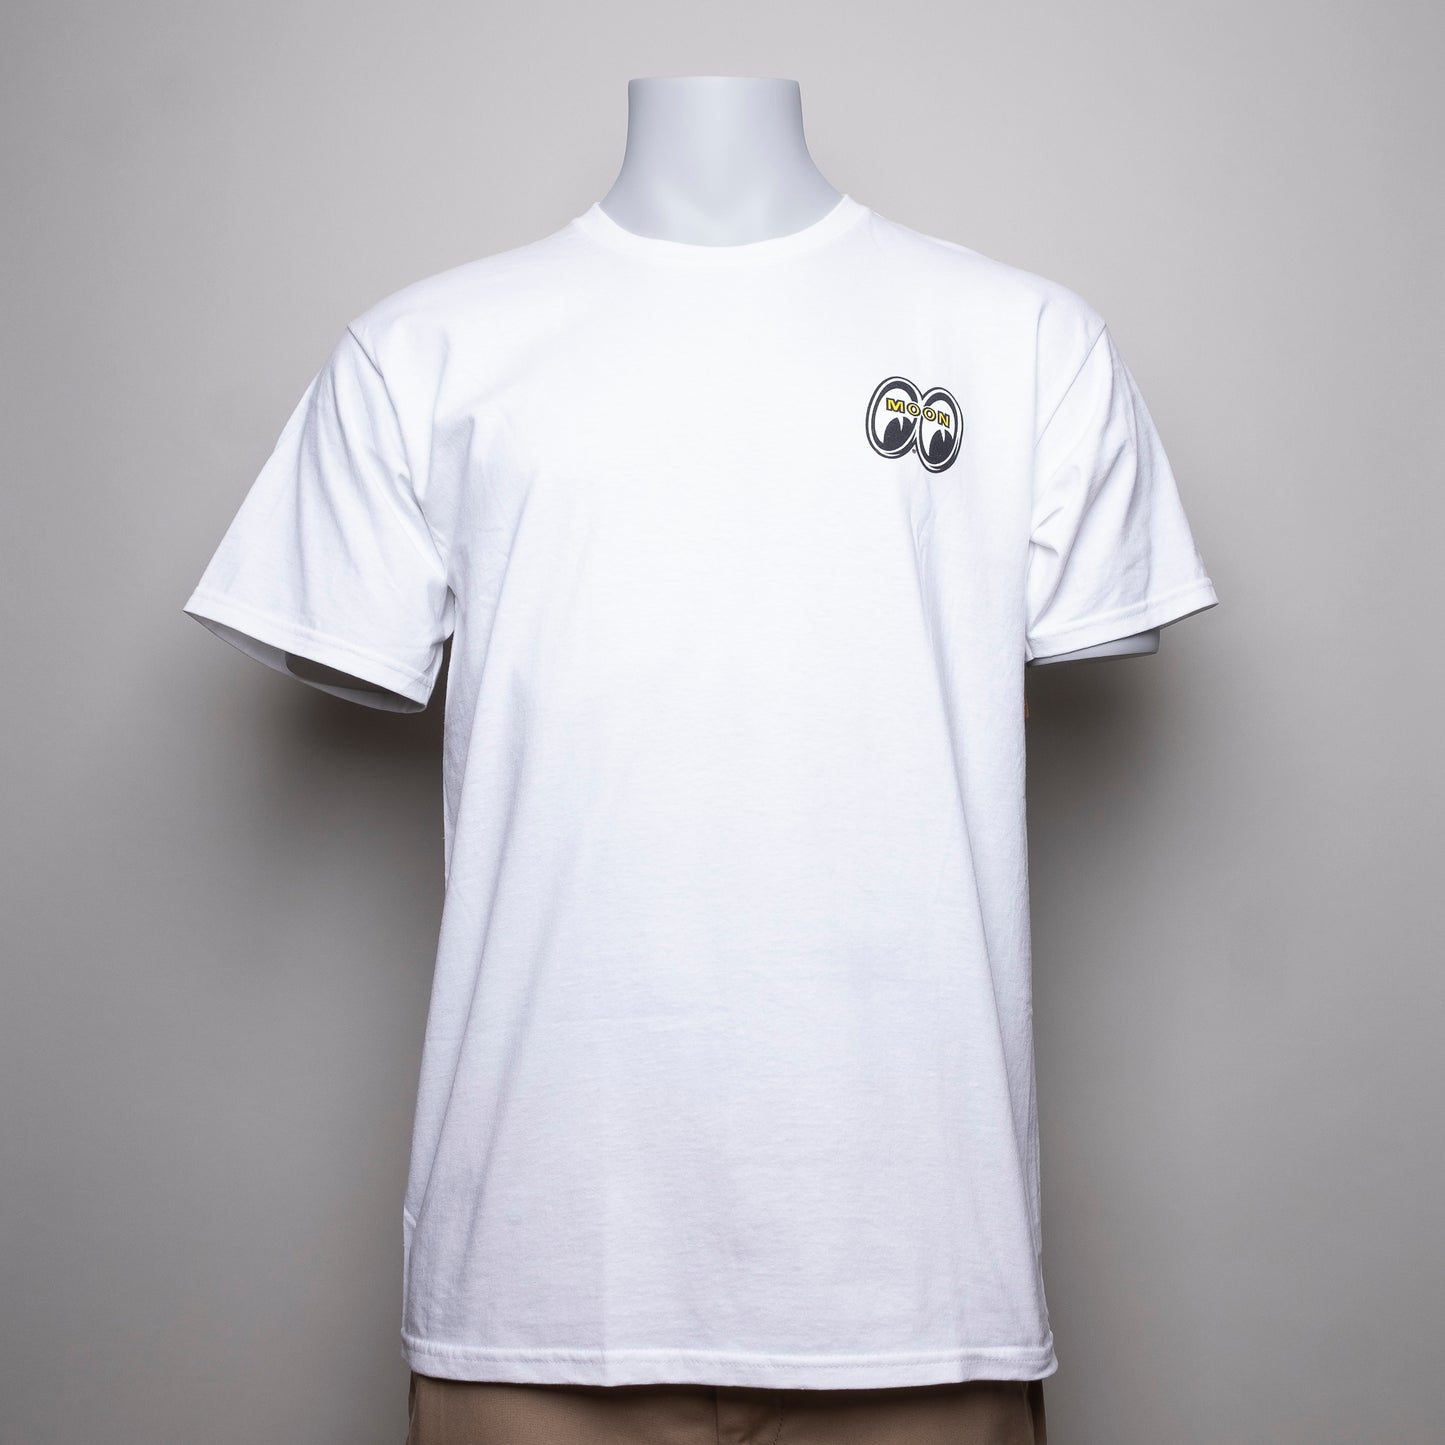 Mit dem ,,Loser Machine – CALI-STYLE´´ T-Shirt in weiß ergänzen sie ihr Alltags Outfit Prima in jeder Variante. Das klassische T-Shirt besitzt zwei einzigartige Aufdrucke auf der linken Brusthöhe & auf der Rückseite des Shirts. Mit diesem lässigen Look aus 100% Baumwolle können sie gar nichts verkehrt machen